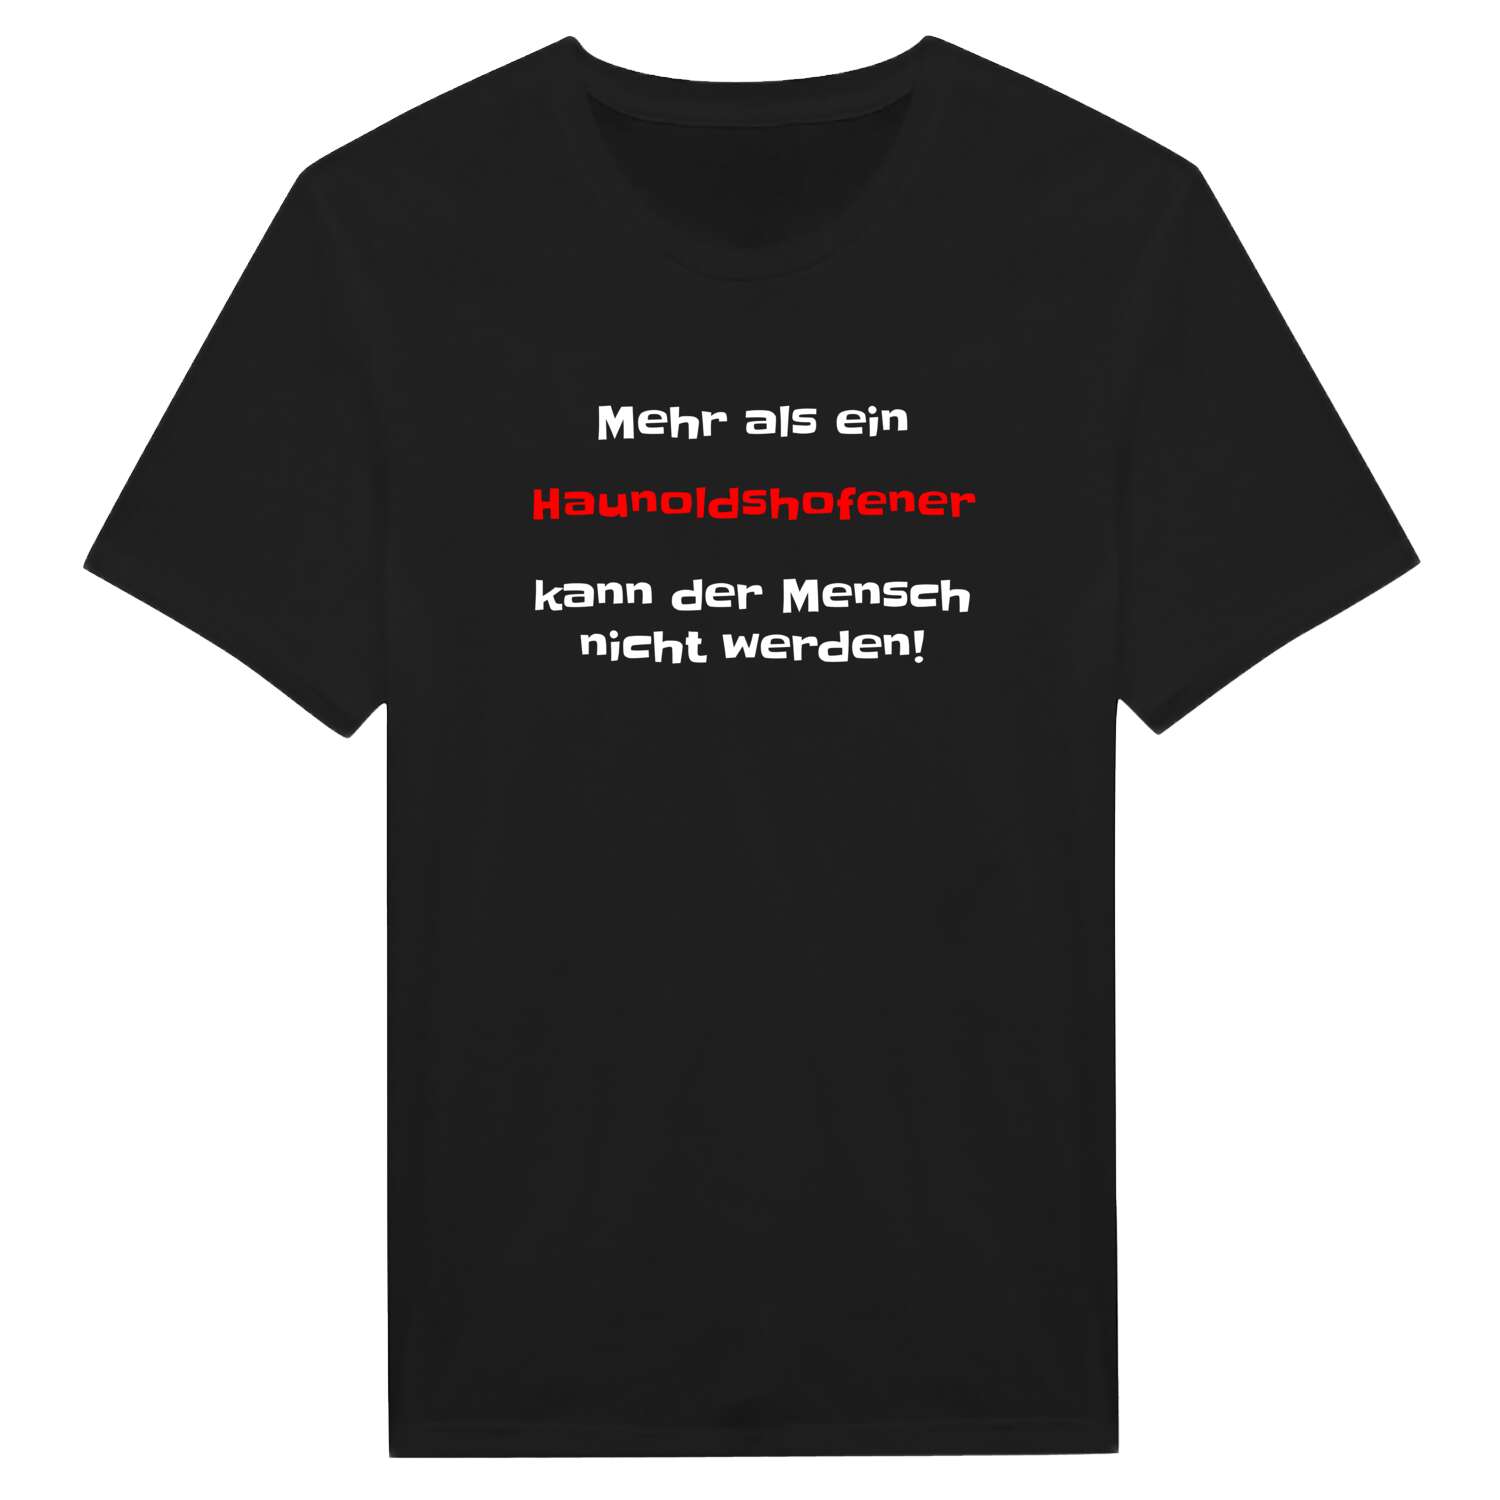 Haunoldshofen T-Shirt »Mehr als ein«